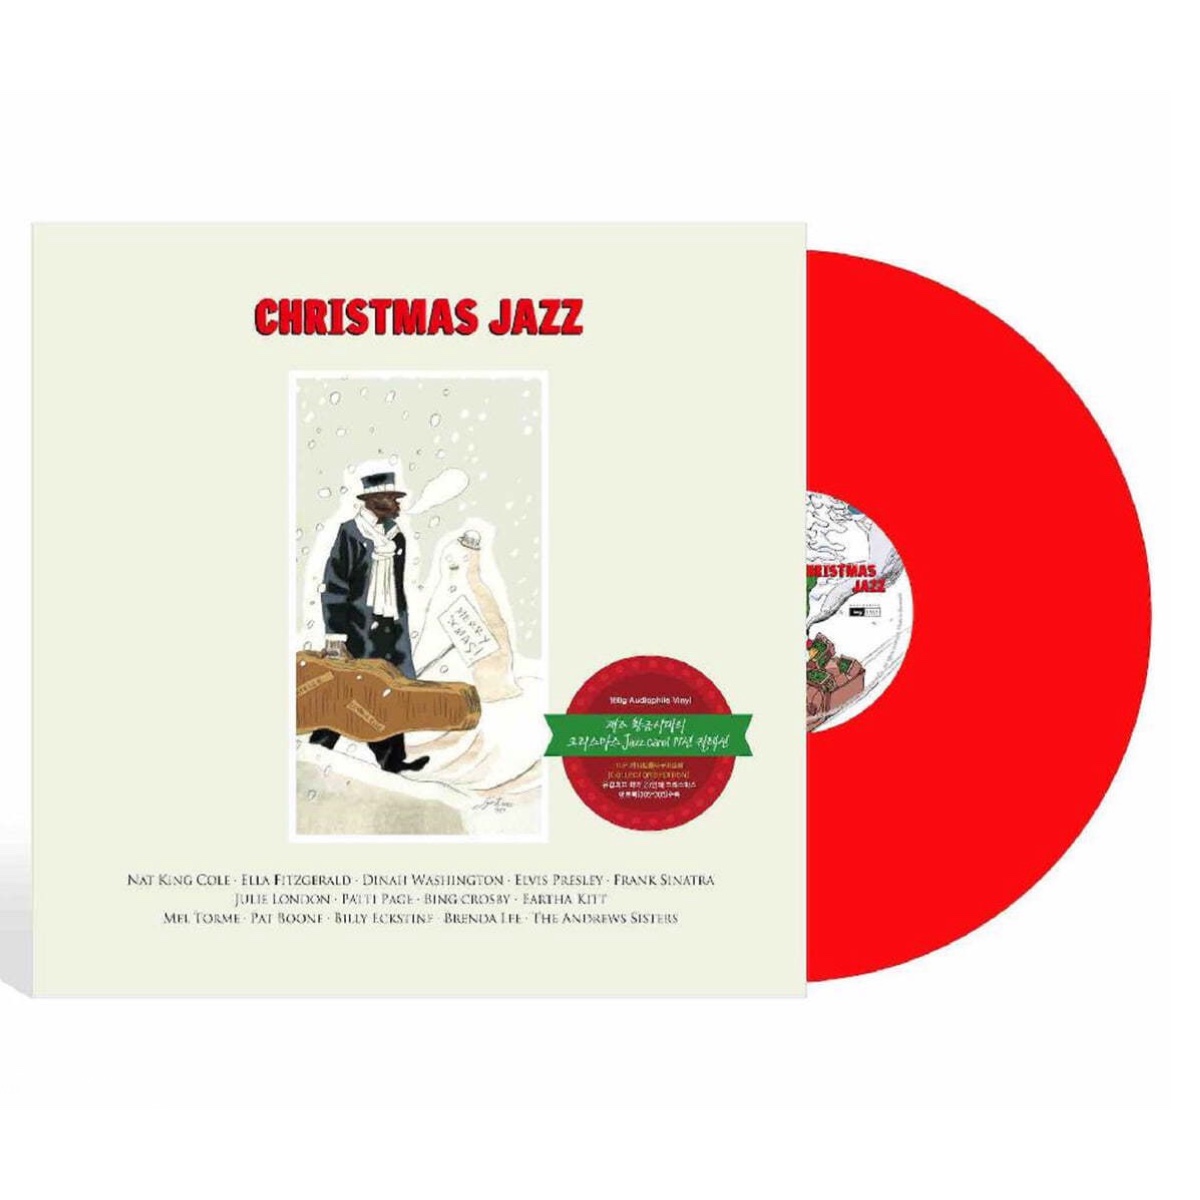 예약판매[PRE-ORDER] 크리스마스 재즈 캐럴 모음집 (Christmas Jazz) [레드 컬러 LP]